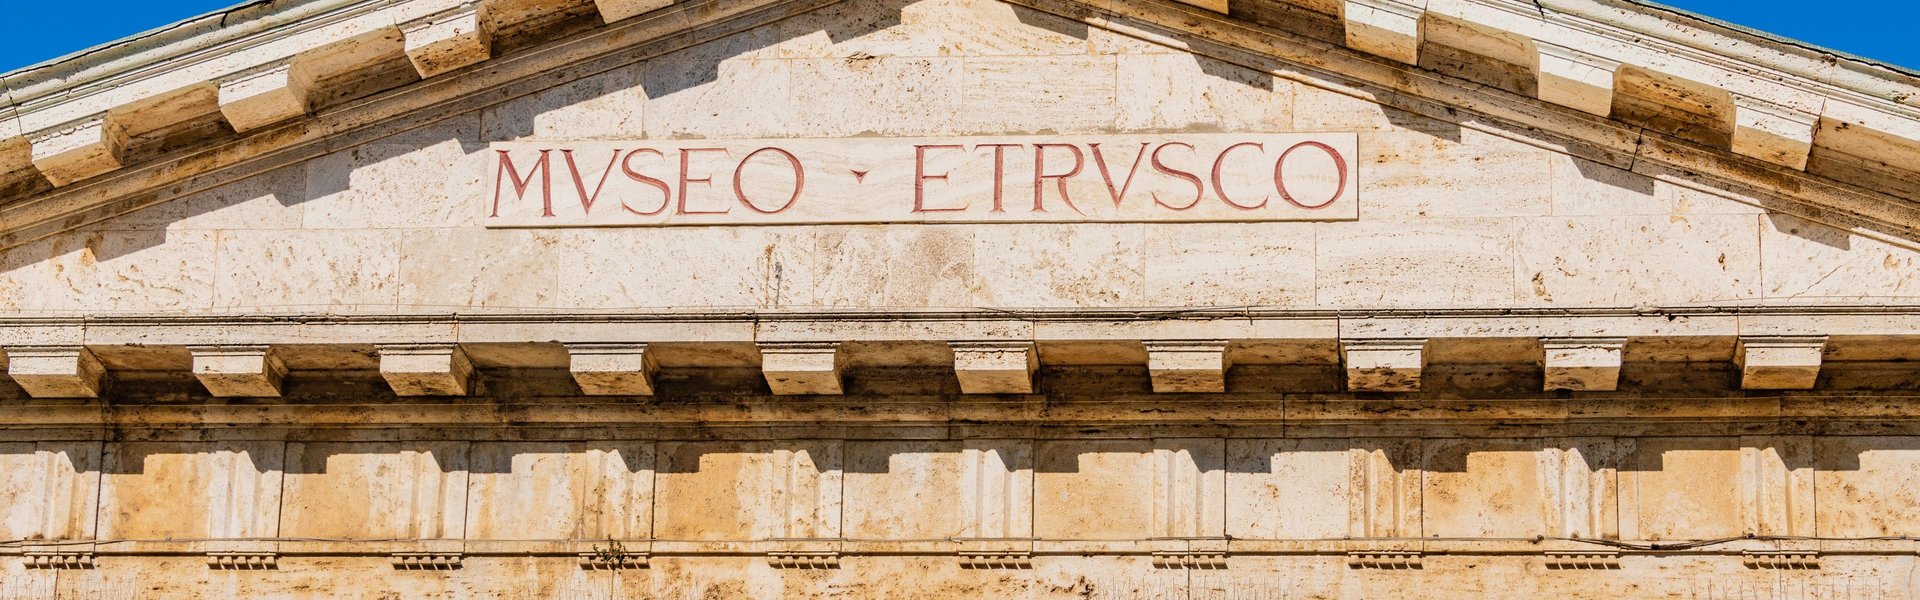 Chiusi, facciata del Museo Etrusco. particolare